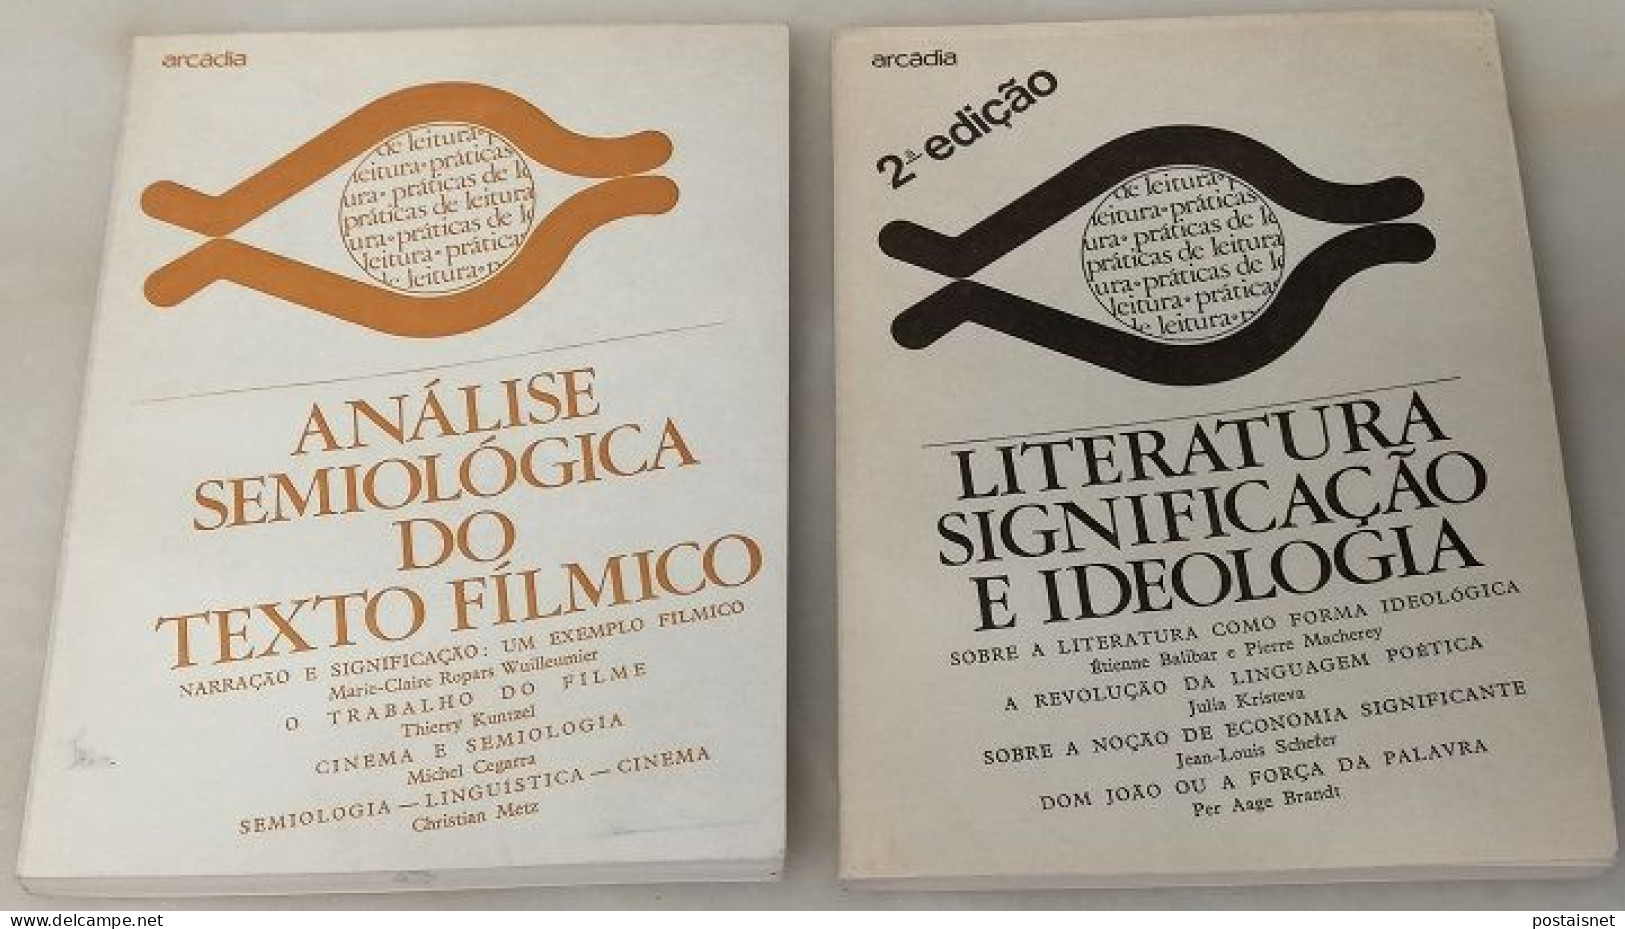 Análise Semiológica Do Texto Fílmico E Literatura Significação E Ideologia - Arcádia - Ontwikkeling